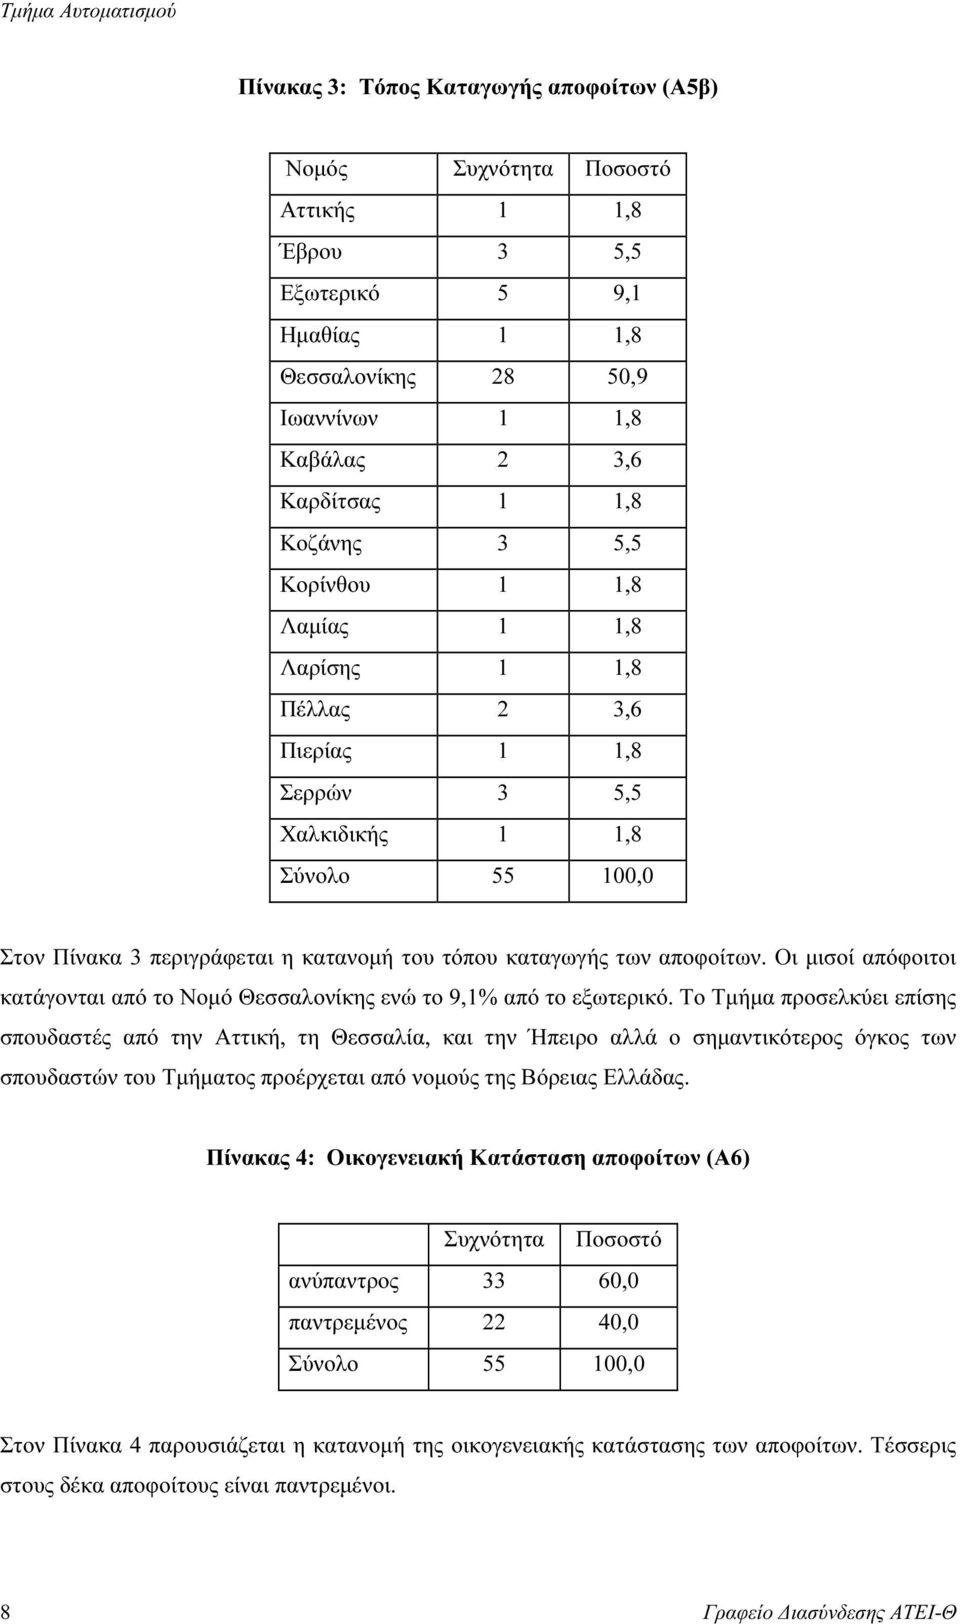 Οι µισοί απόφοιτοι κατάγονται από το Νοµό Θεσσαλονίκης ενώ το 9,1% από το εξωτερικό.